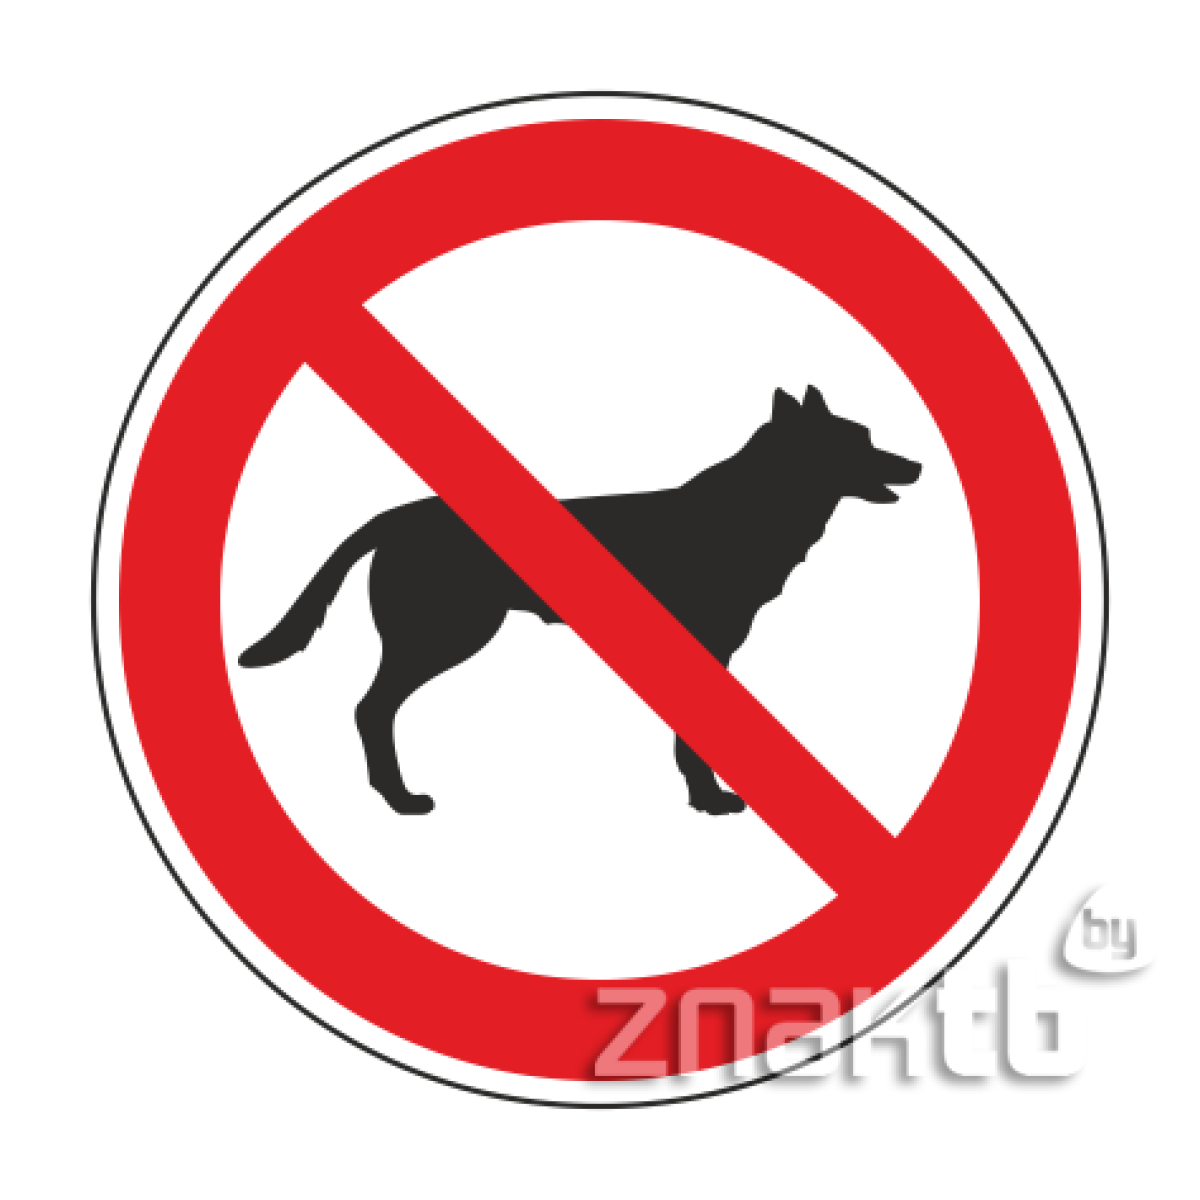 Знак Запрещается вход с животными код Р14